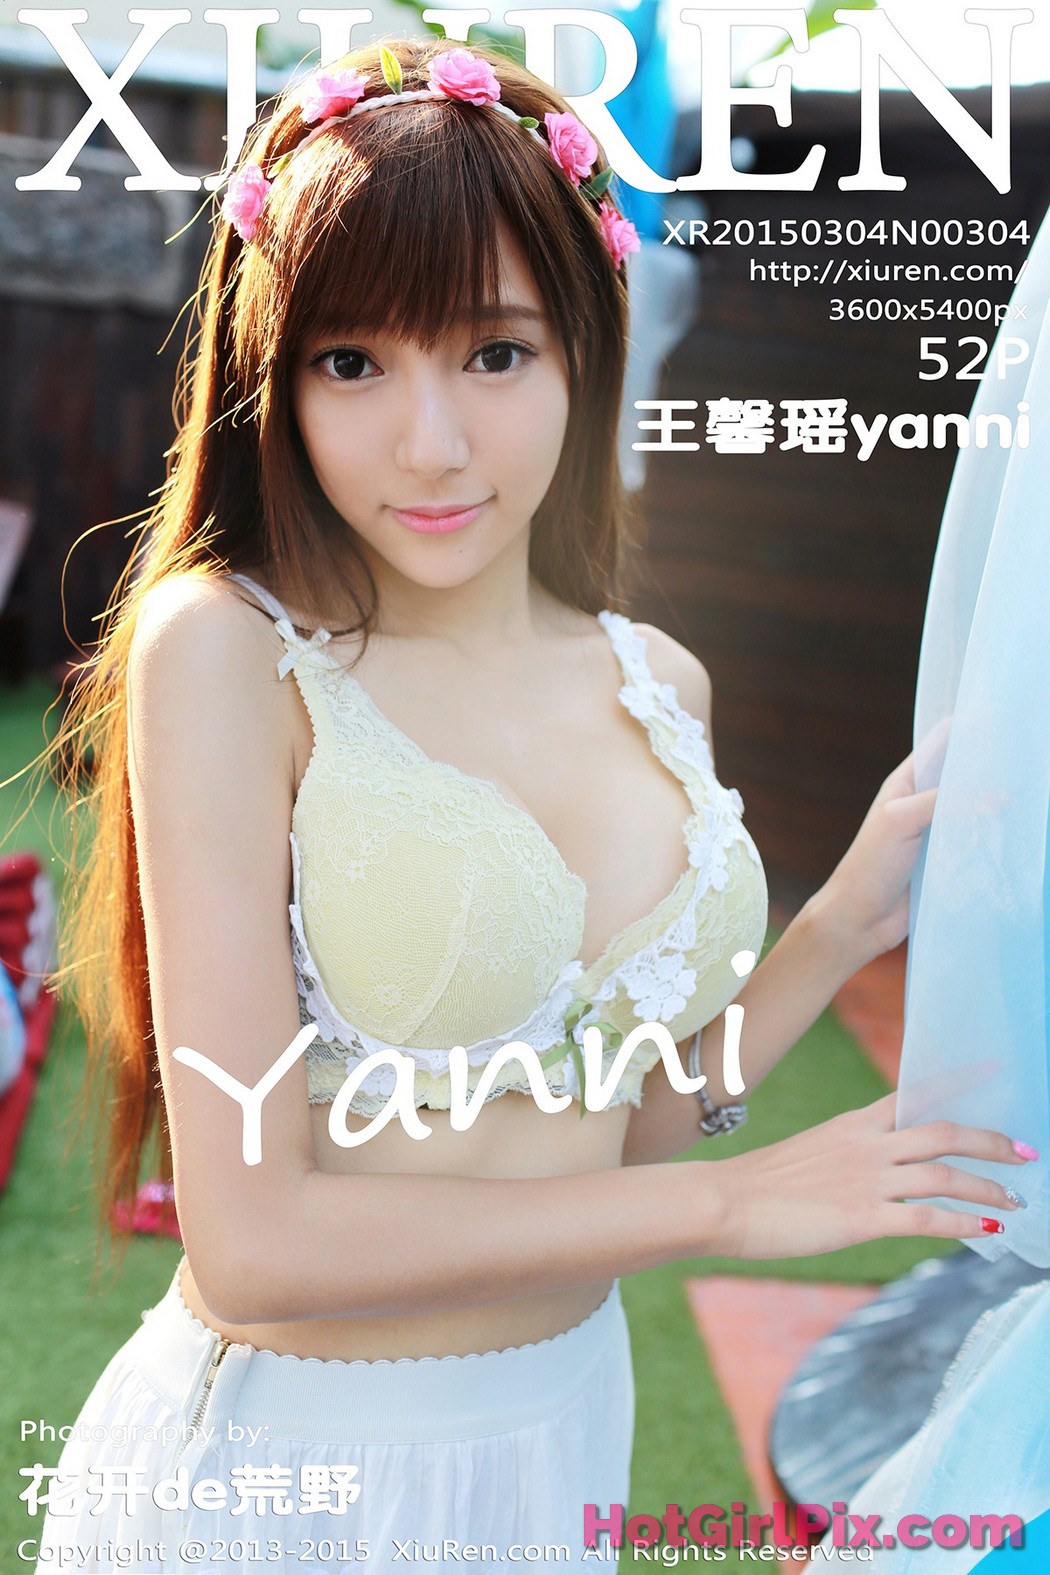 [XIUREN] No.304 Wang Xin Yao 王馨瑶yanni Cover Photo